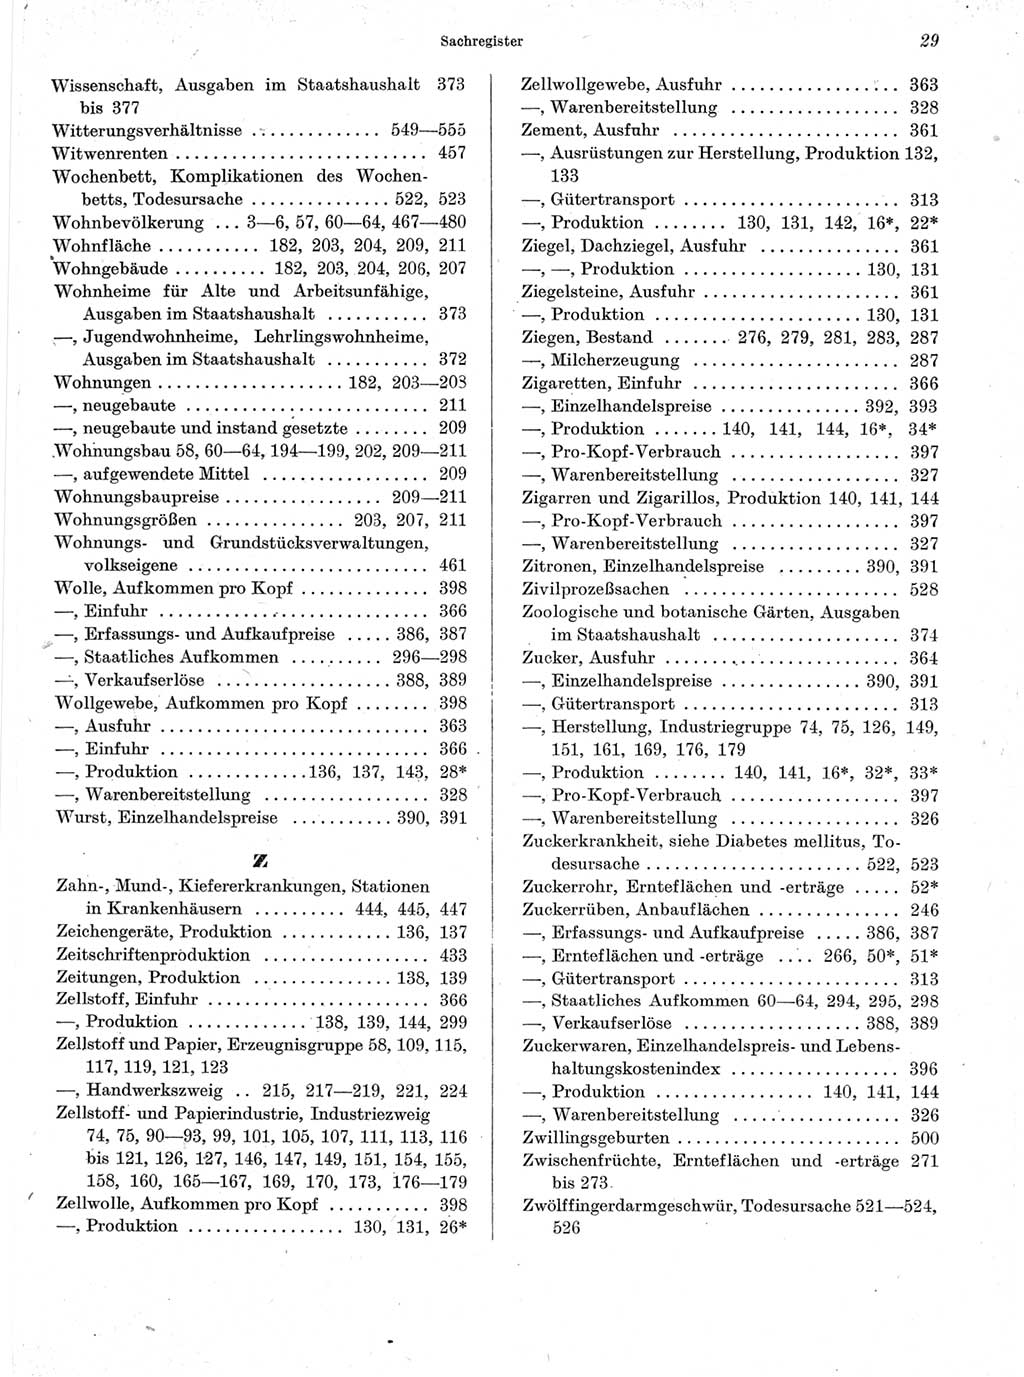 Statistisches Jahrbuch der Deutschen Demokratischen Republik (DDR) 1963, Seite 29 (Stat. Jb. DDR 1963, S. 29)